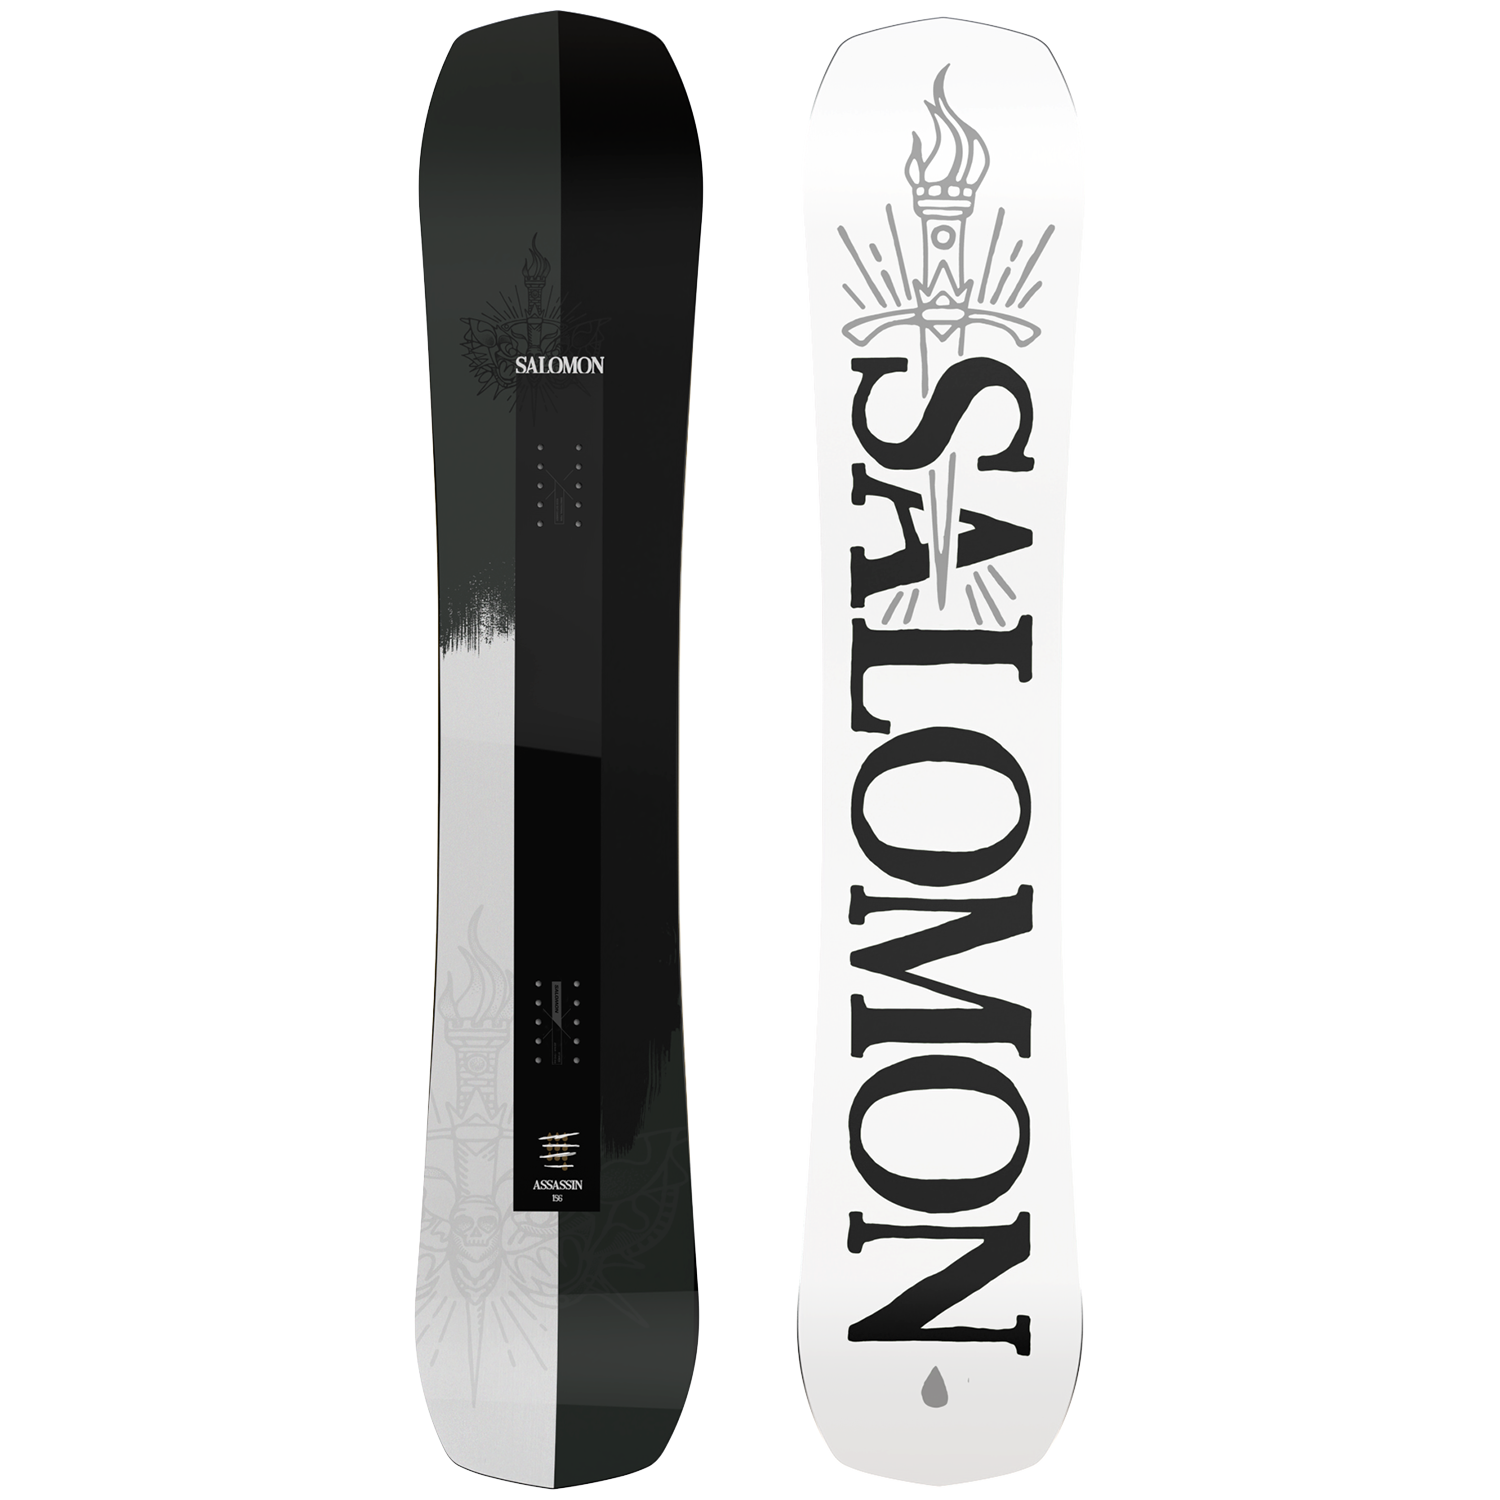 SALOMON ASSASSIN サロモン アサシン 22-23 153cm - スノーボード